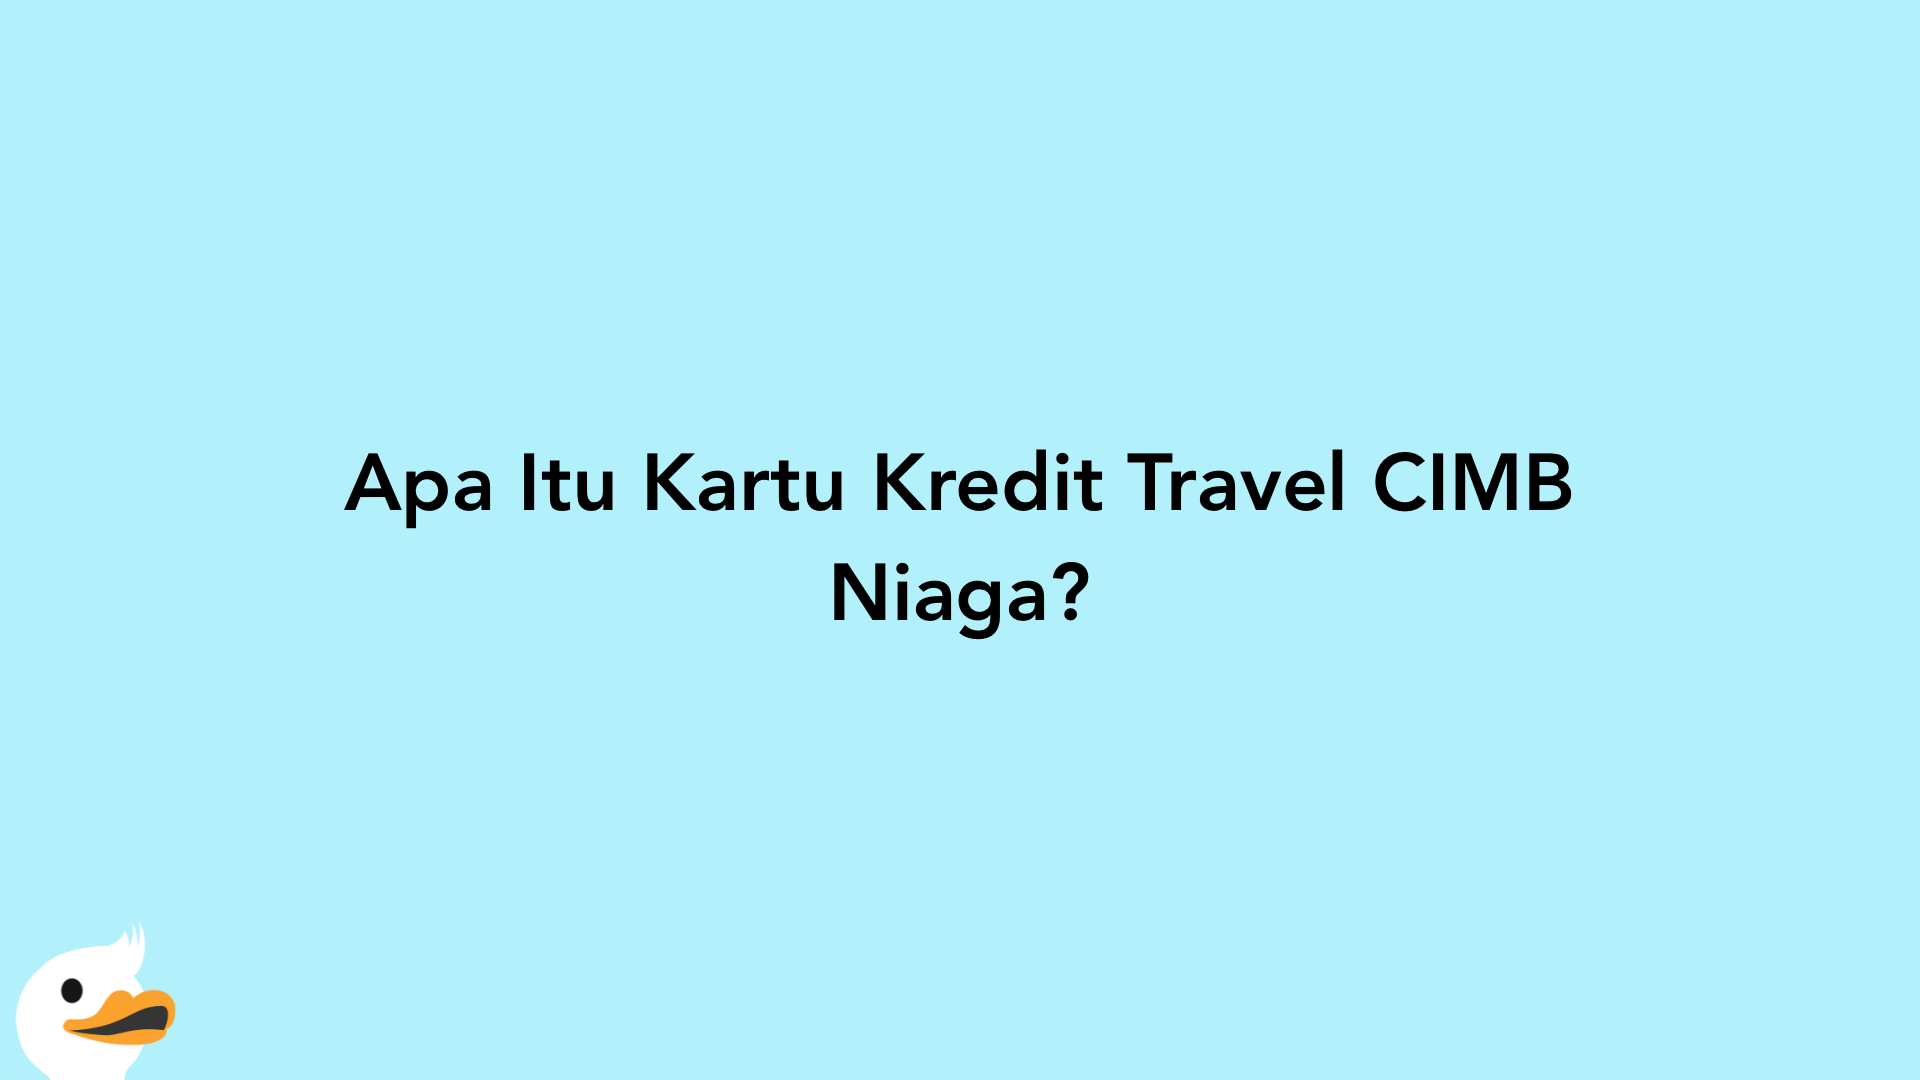 Apa Itu Kartu Kredit Travel CIMB Niaga?